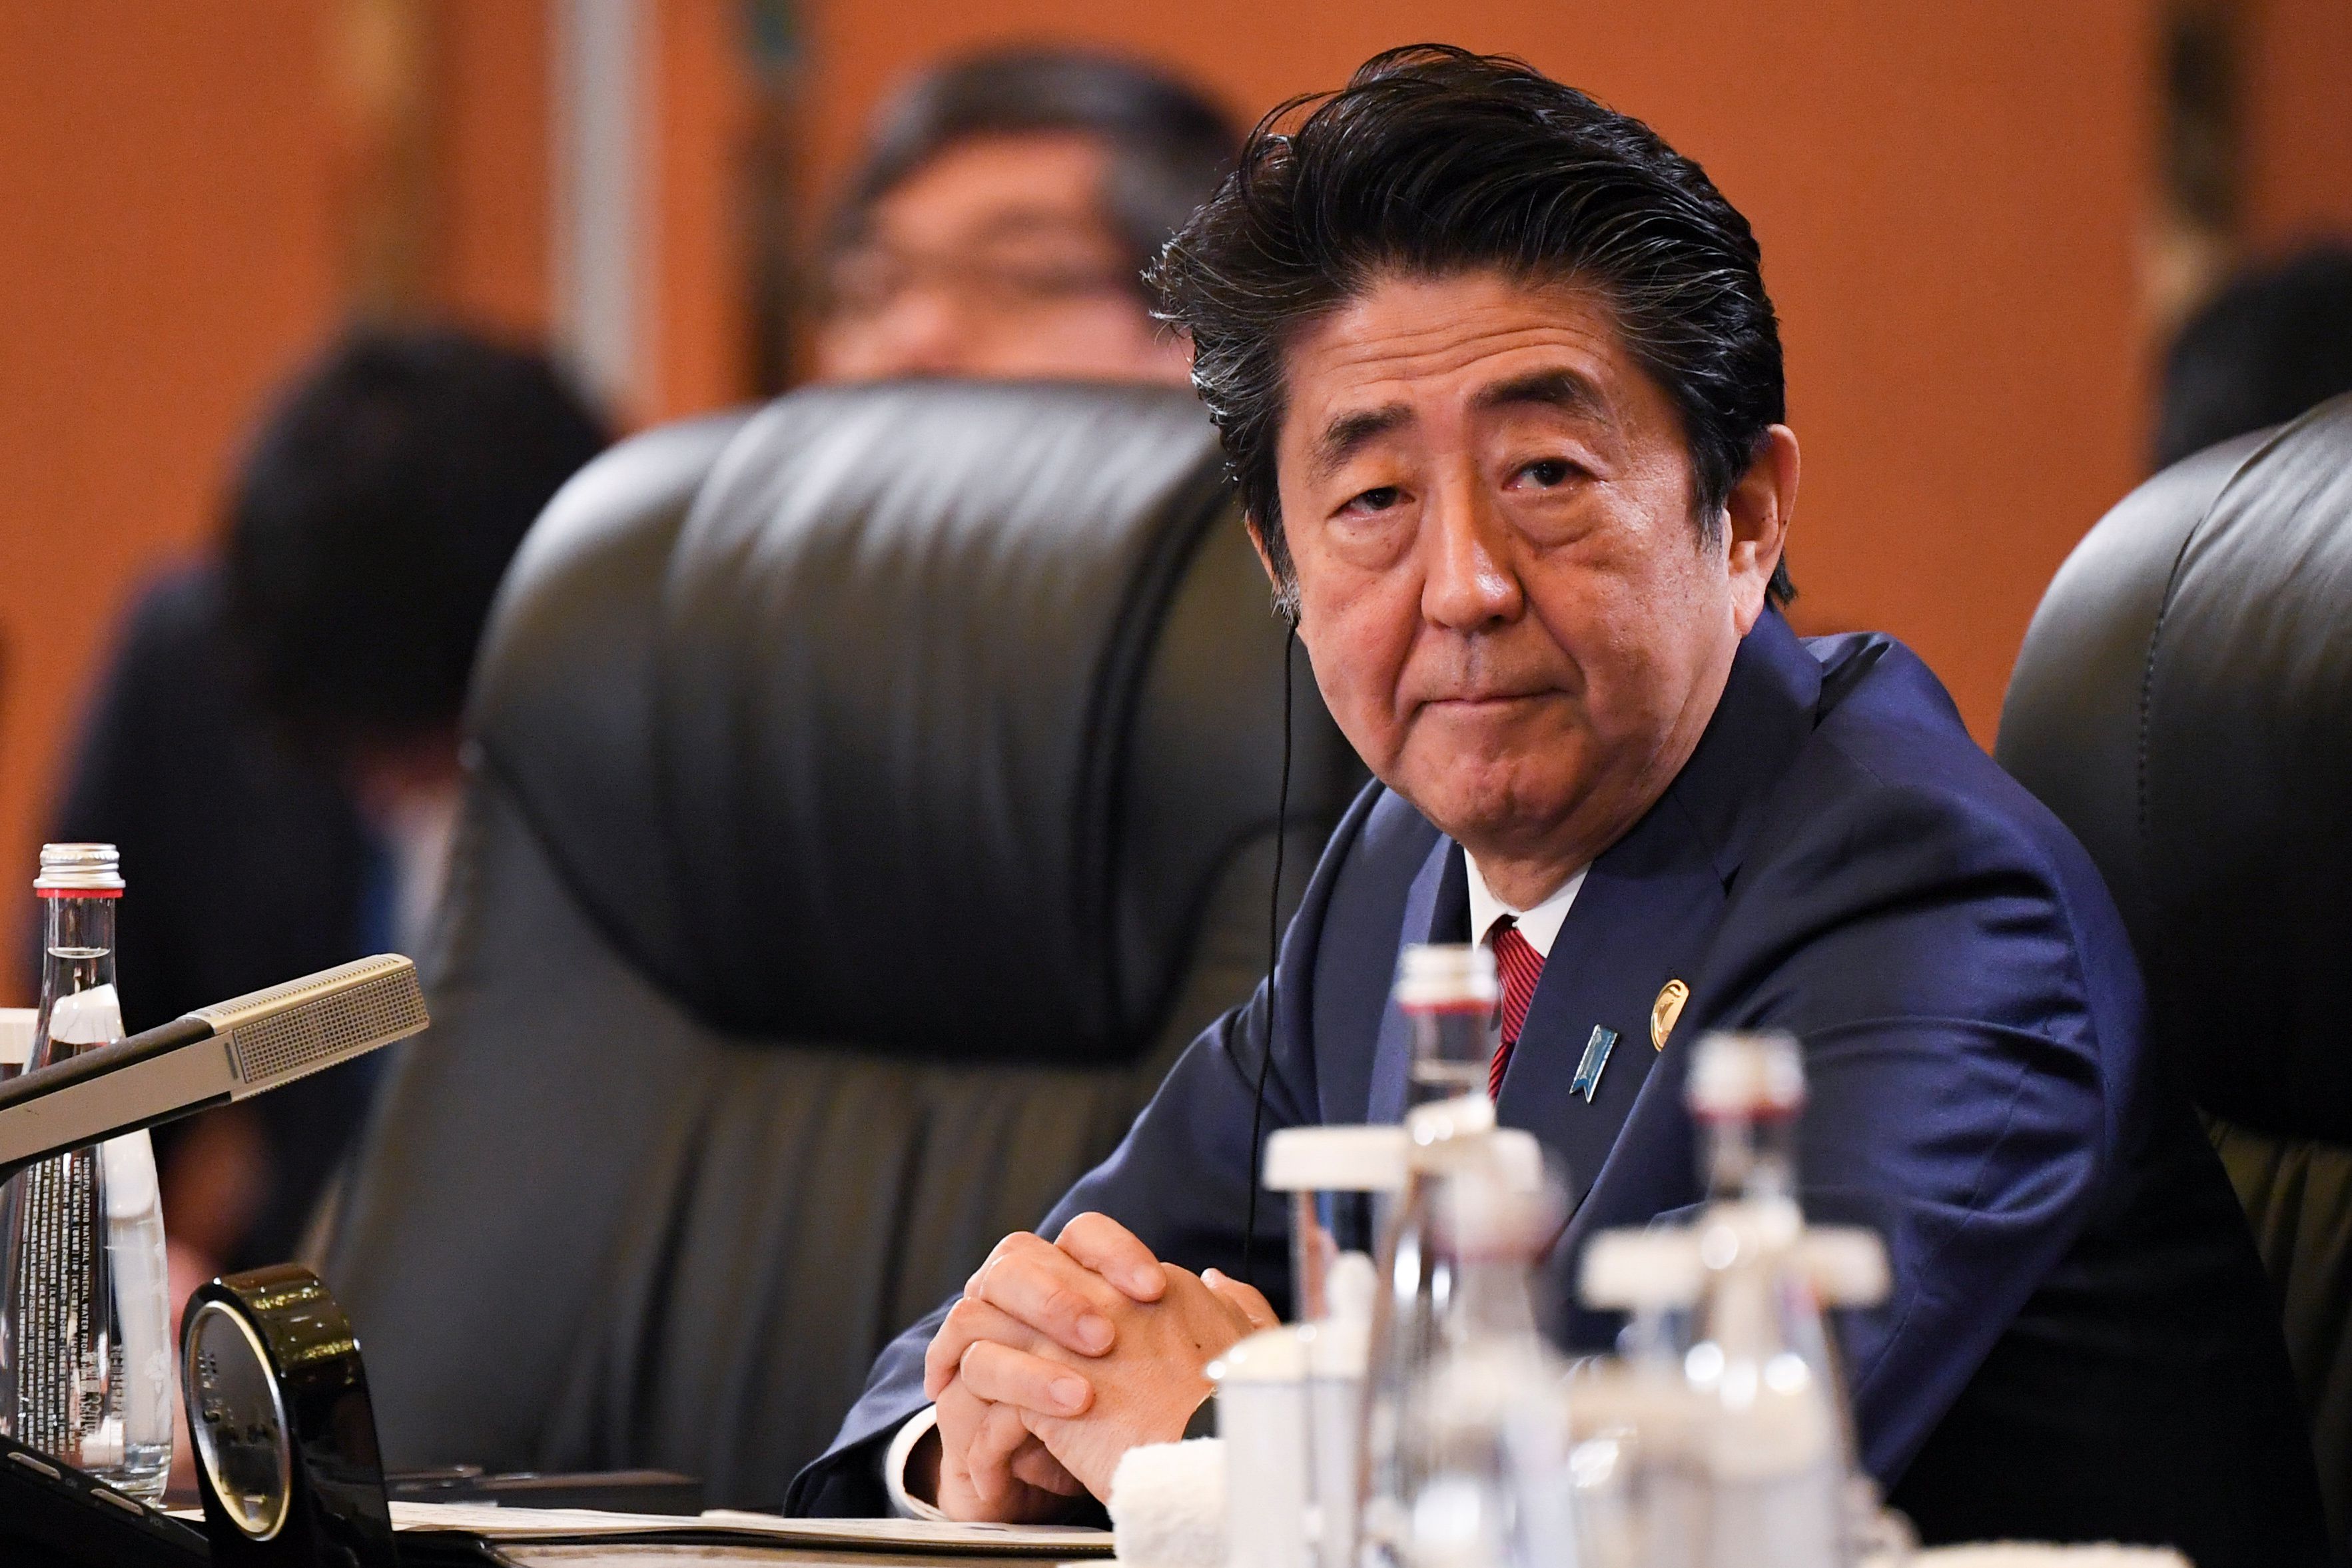 El primer ministro de Japón, Shinzo Abe, asiste a la octava reunión de líderes trilaterales entre China, Corea del Sur y Japón en Chengdu, en la provincia de Sichuan, suroeste de China, el 24 de diciembre de 2019 (Reuters)